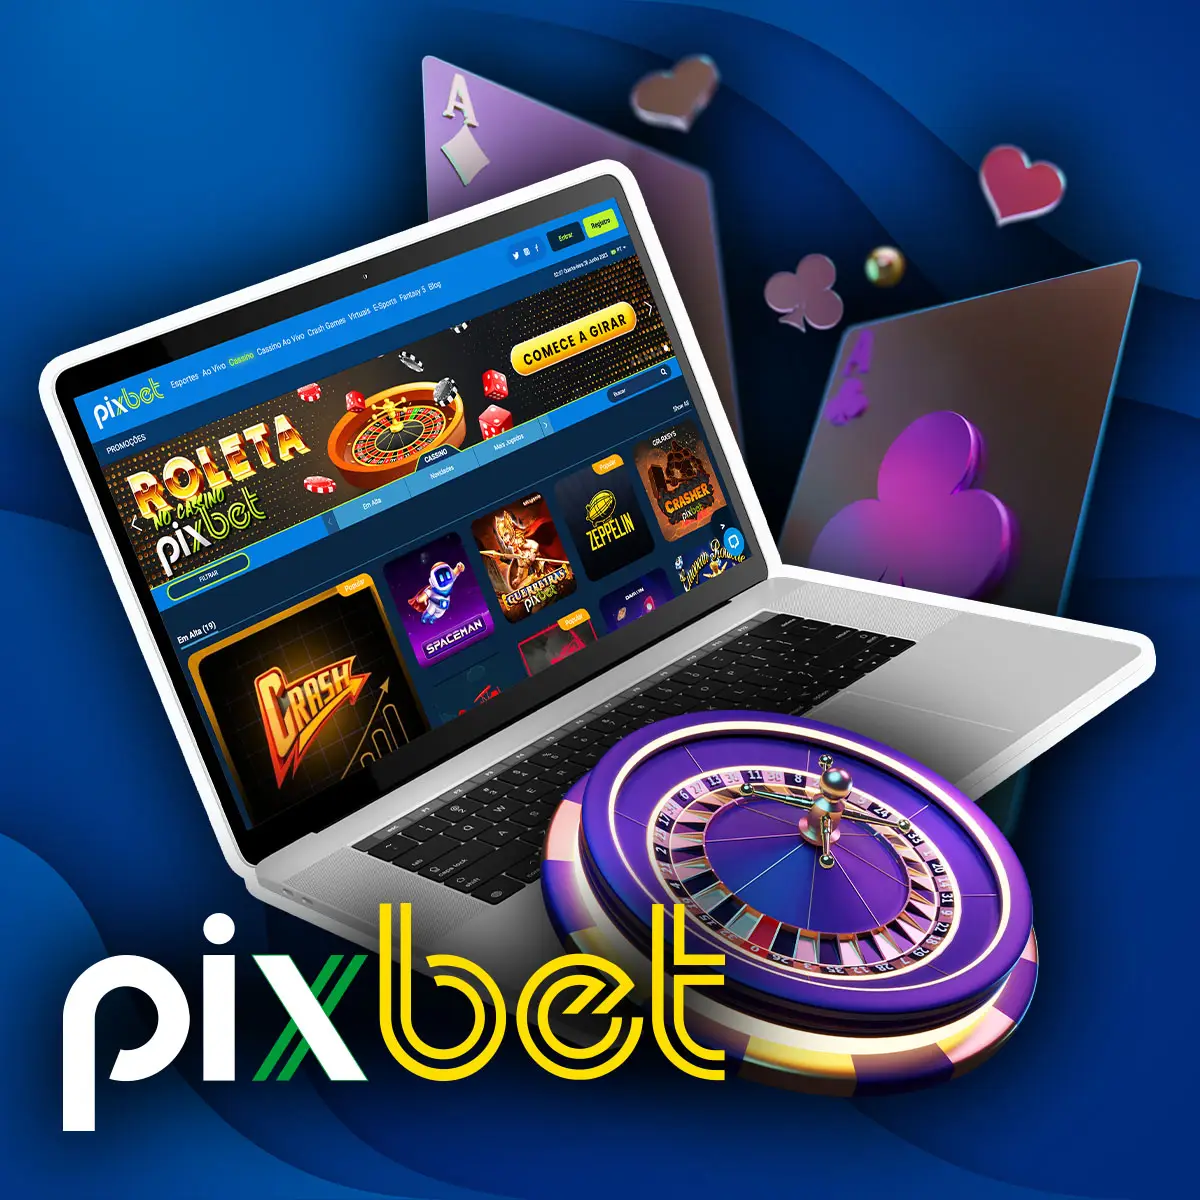 Pixbet Brasil Games: jogos exclusivos